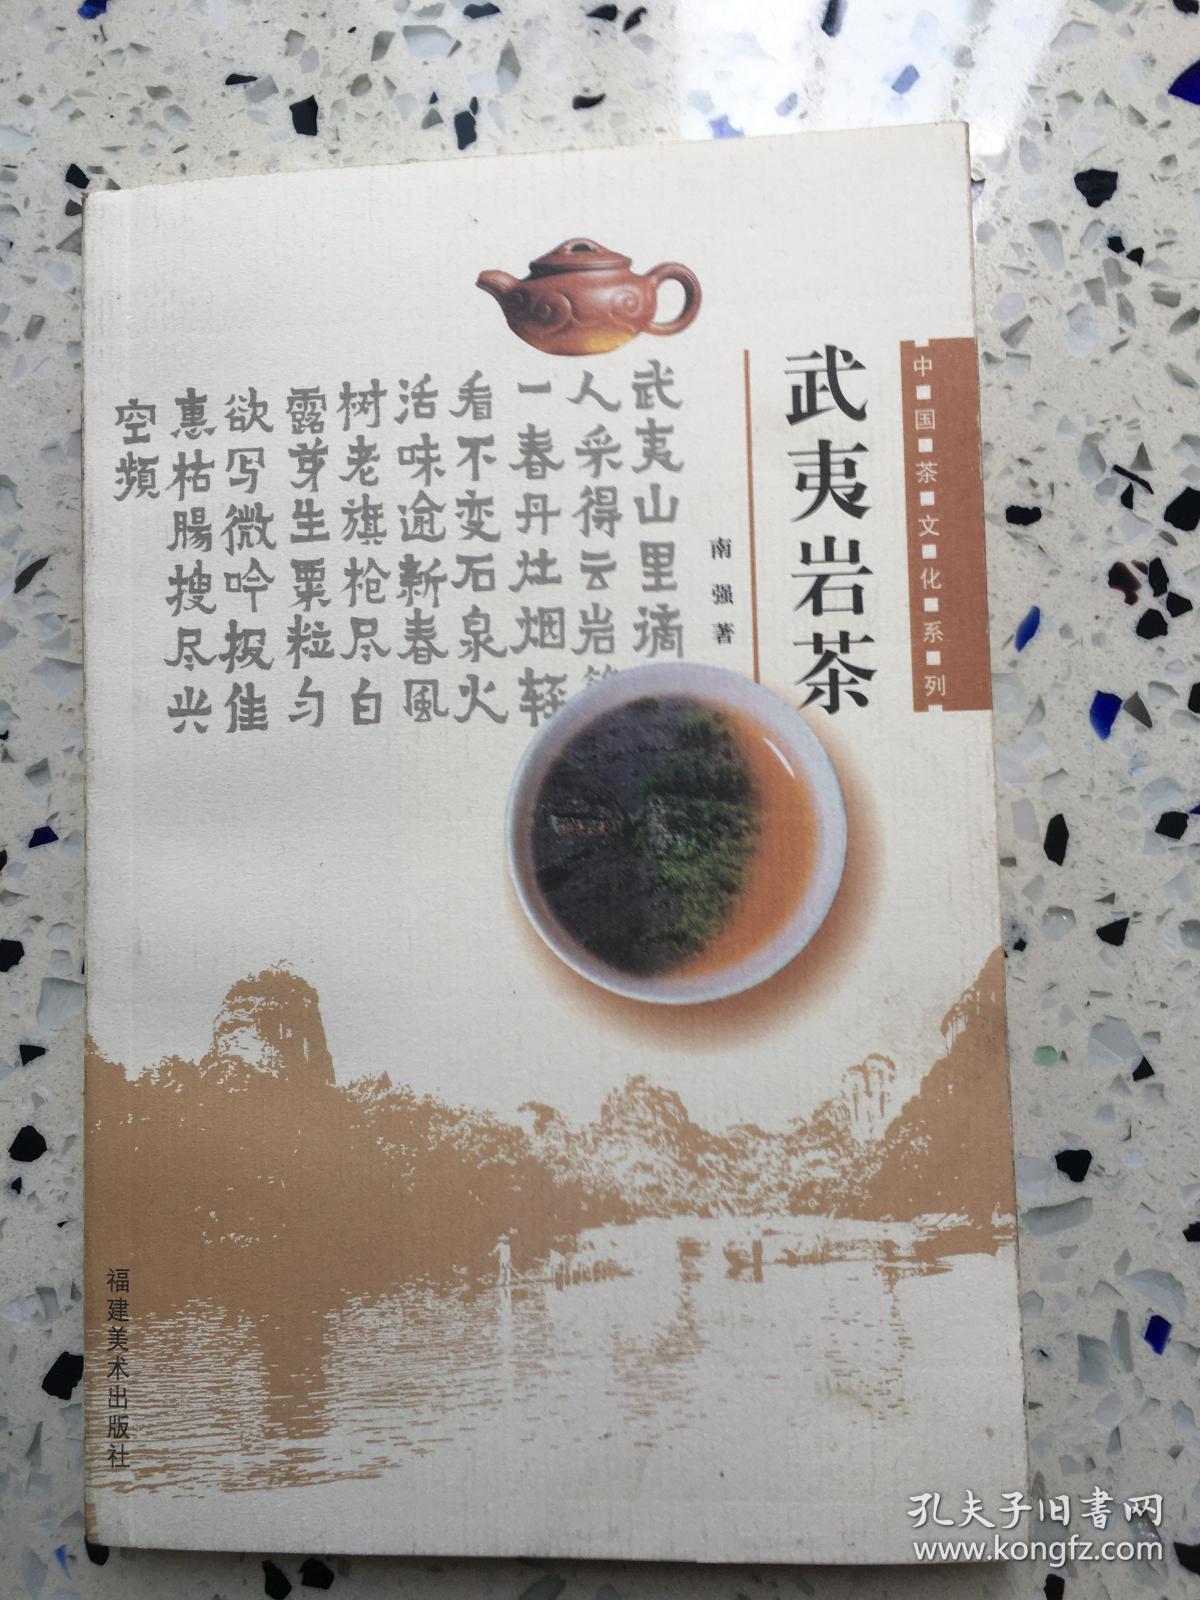 武夷岩茶……品如图……印数6000册